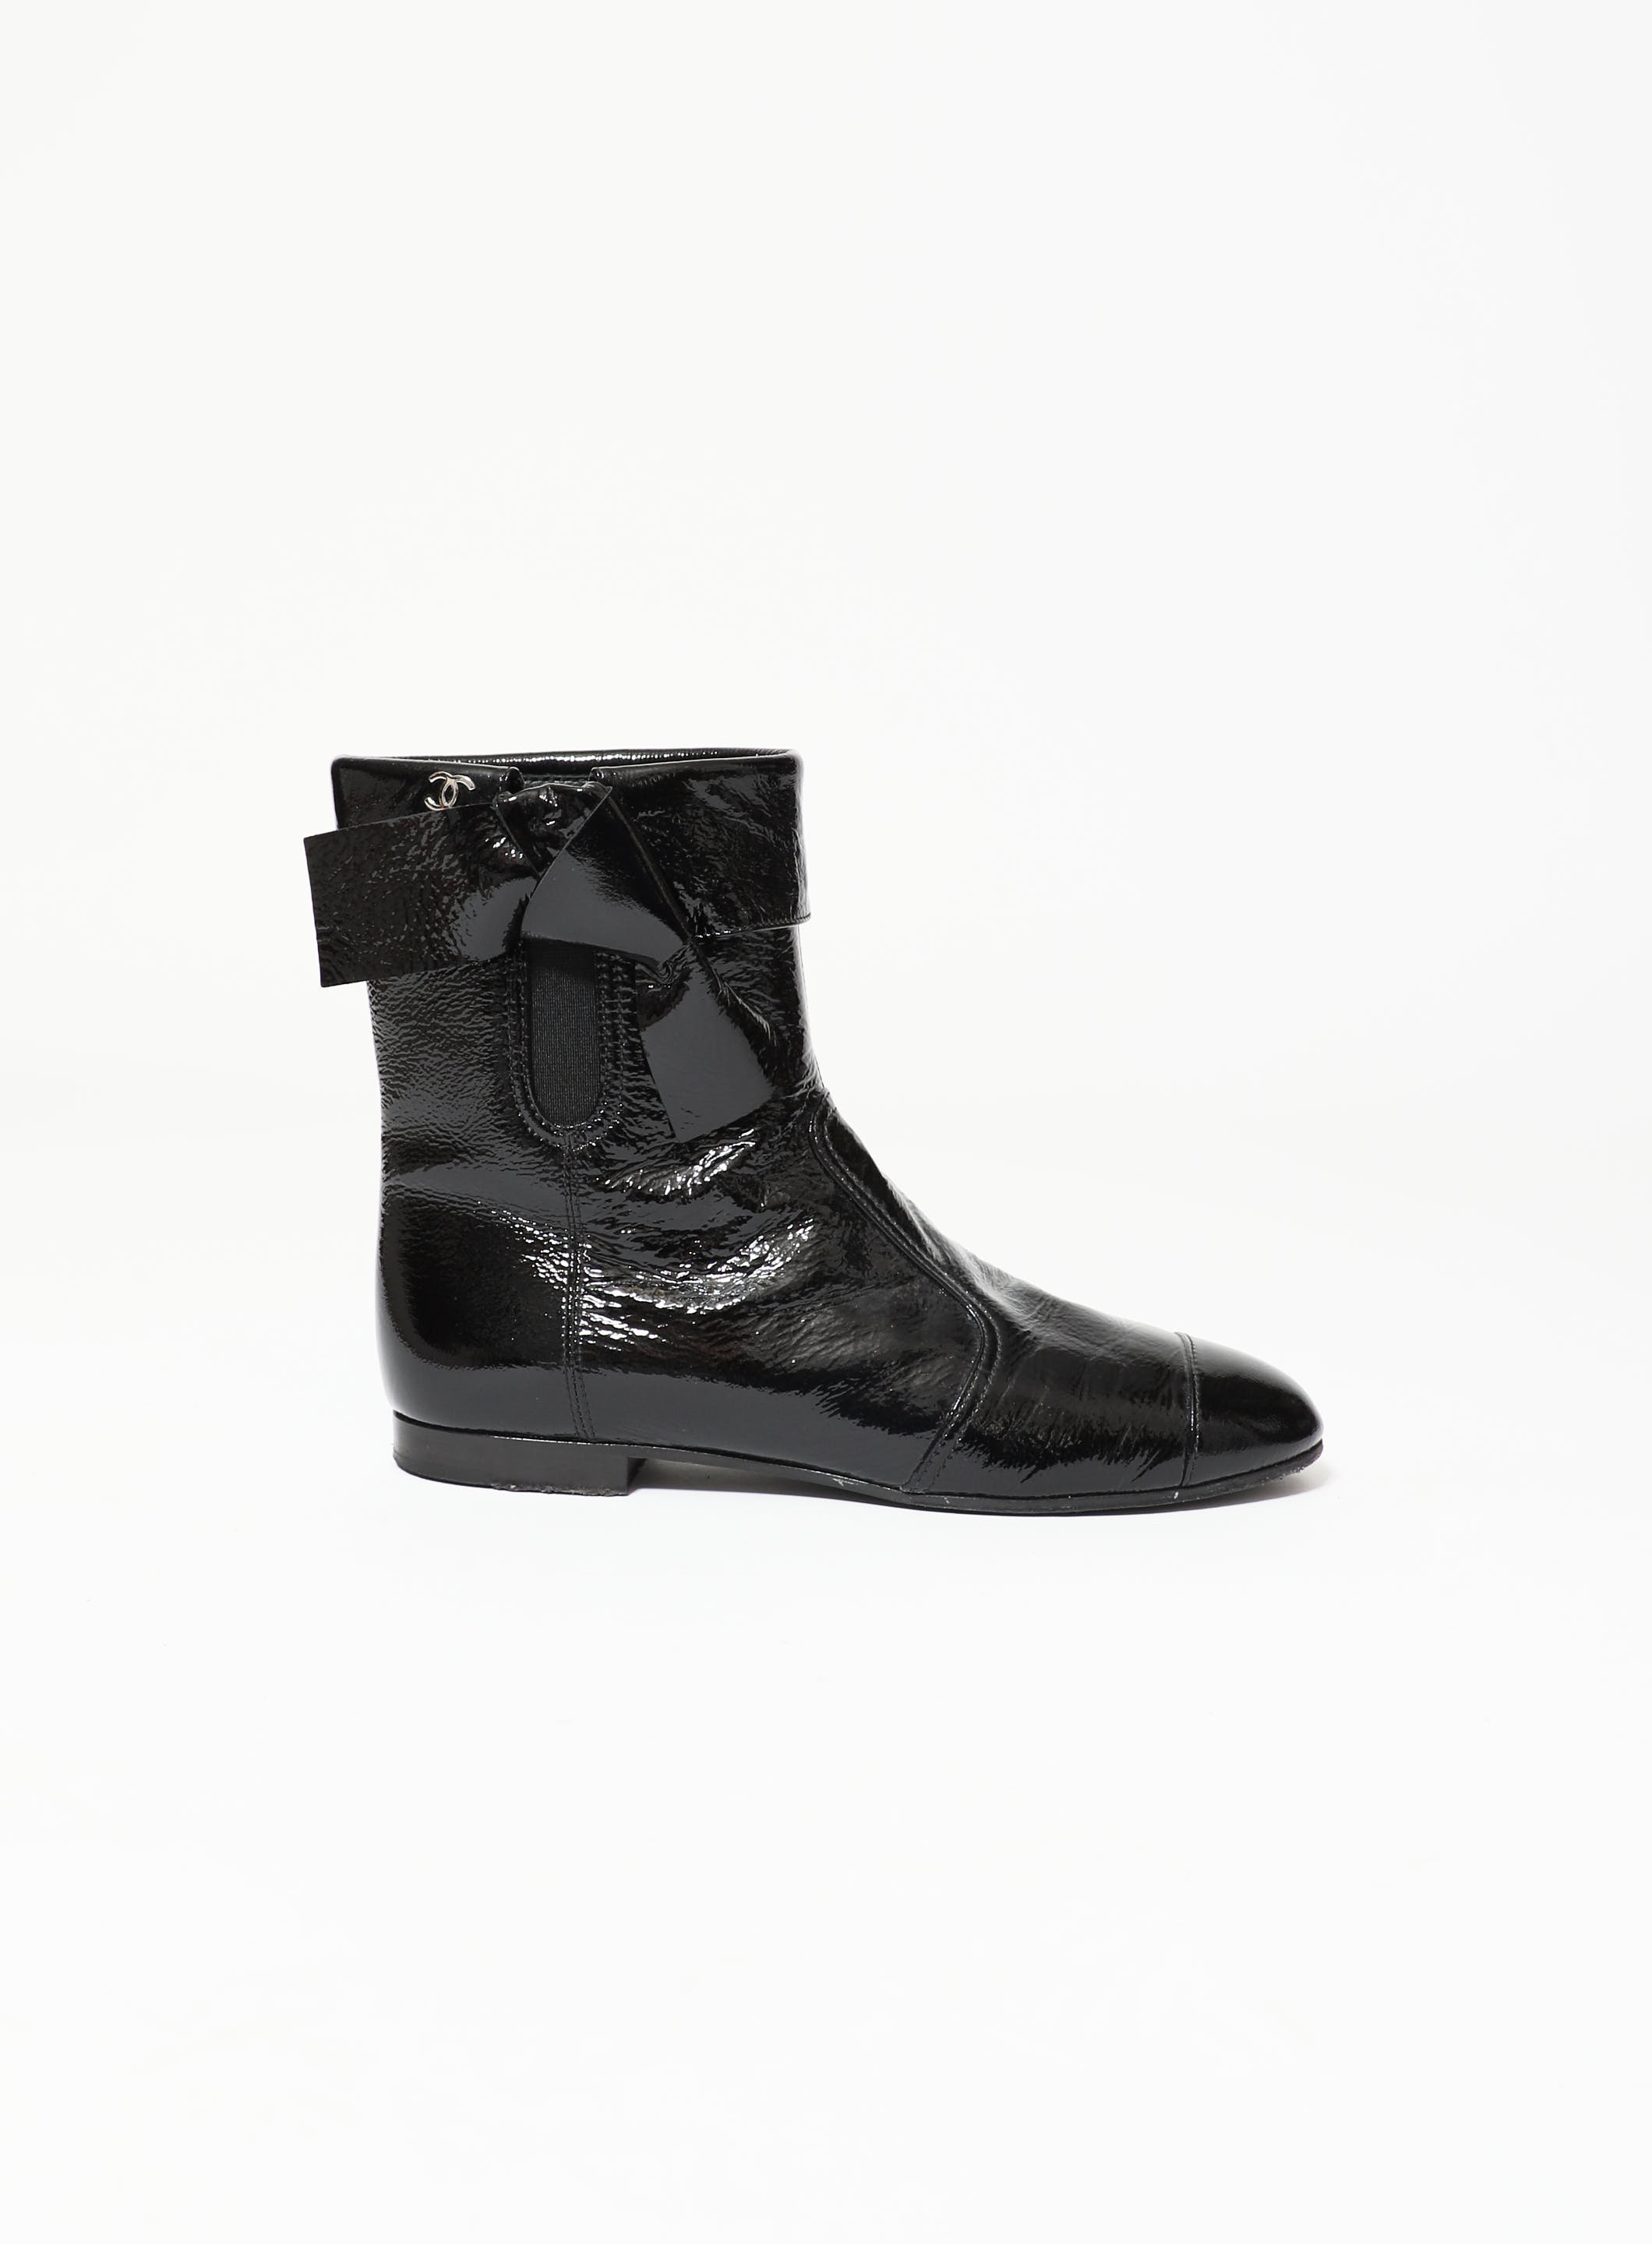 Superb Louis Vuitton Wonderland biker boots in black leather